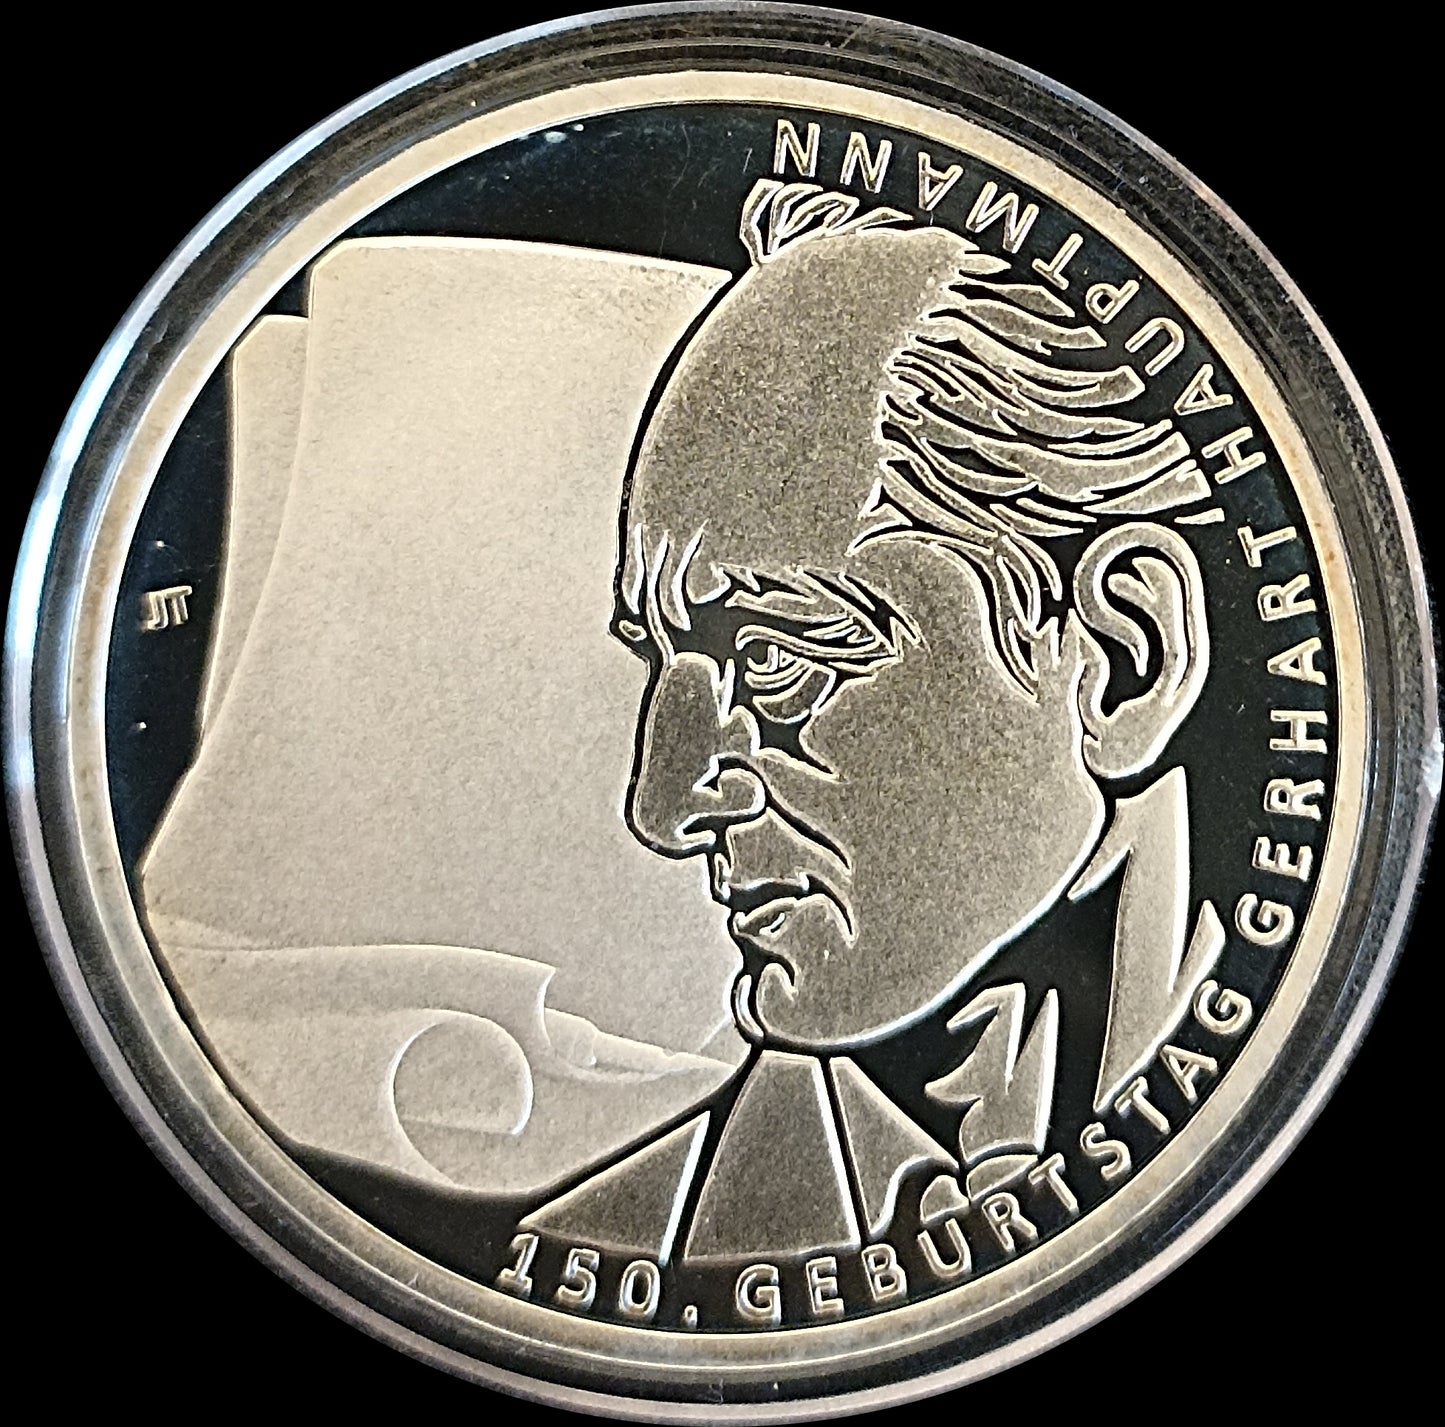 150. GEBURTSTAG GERHART HAUPTMANN, Serie 10 € Silber Gedenkmünzen Deutschland, Spiegelglanz, 2012